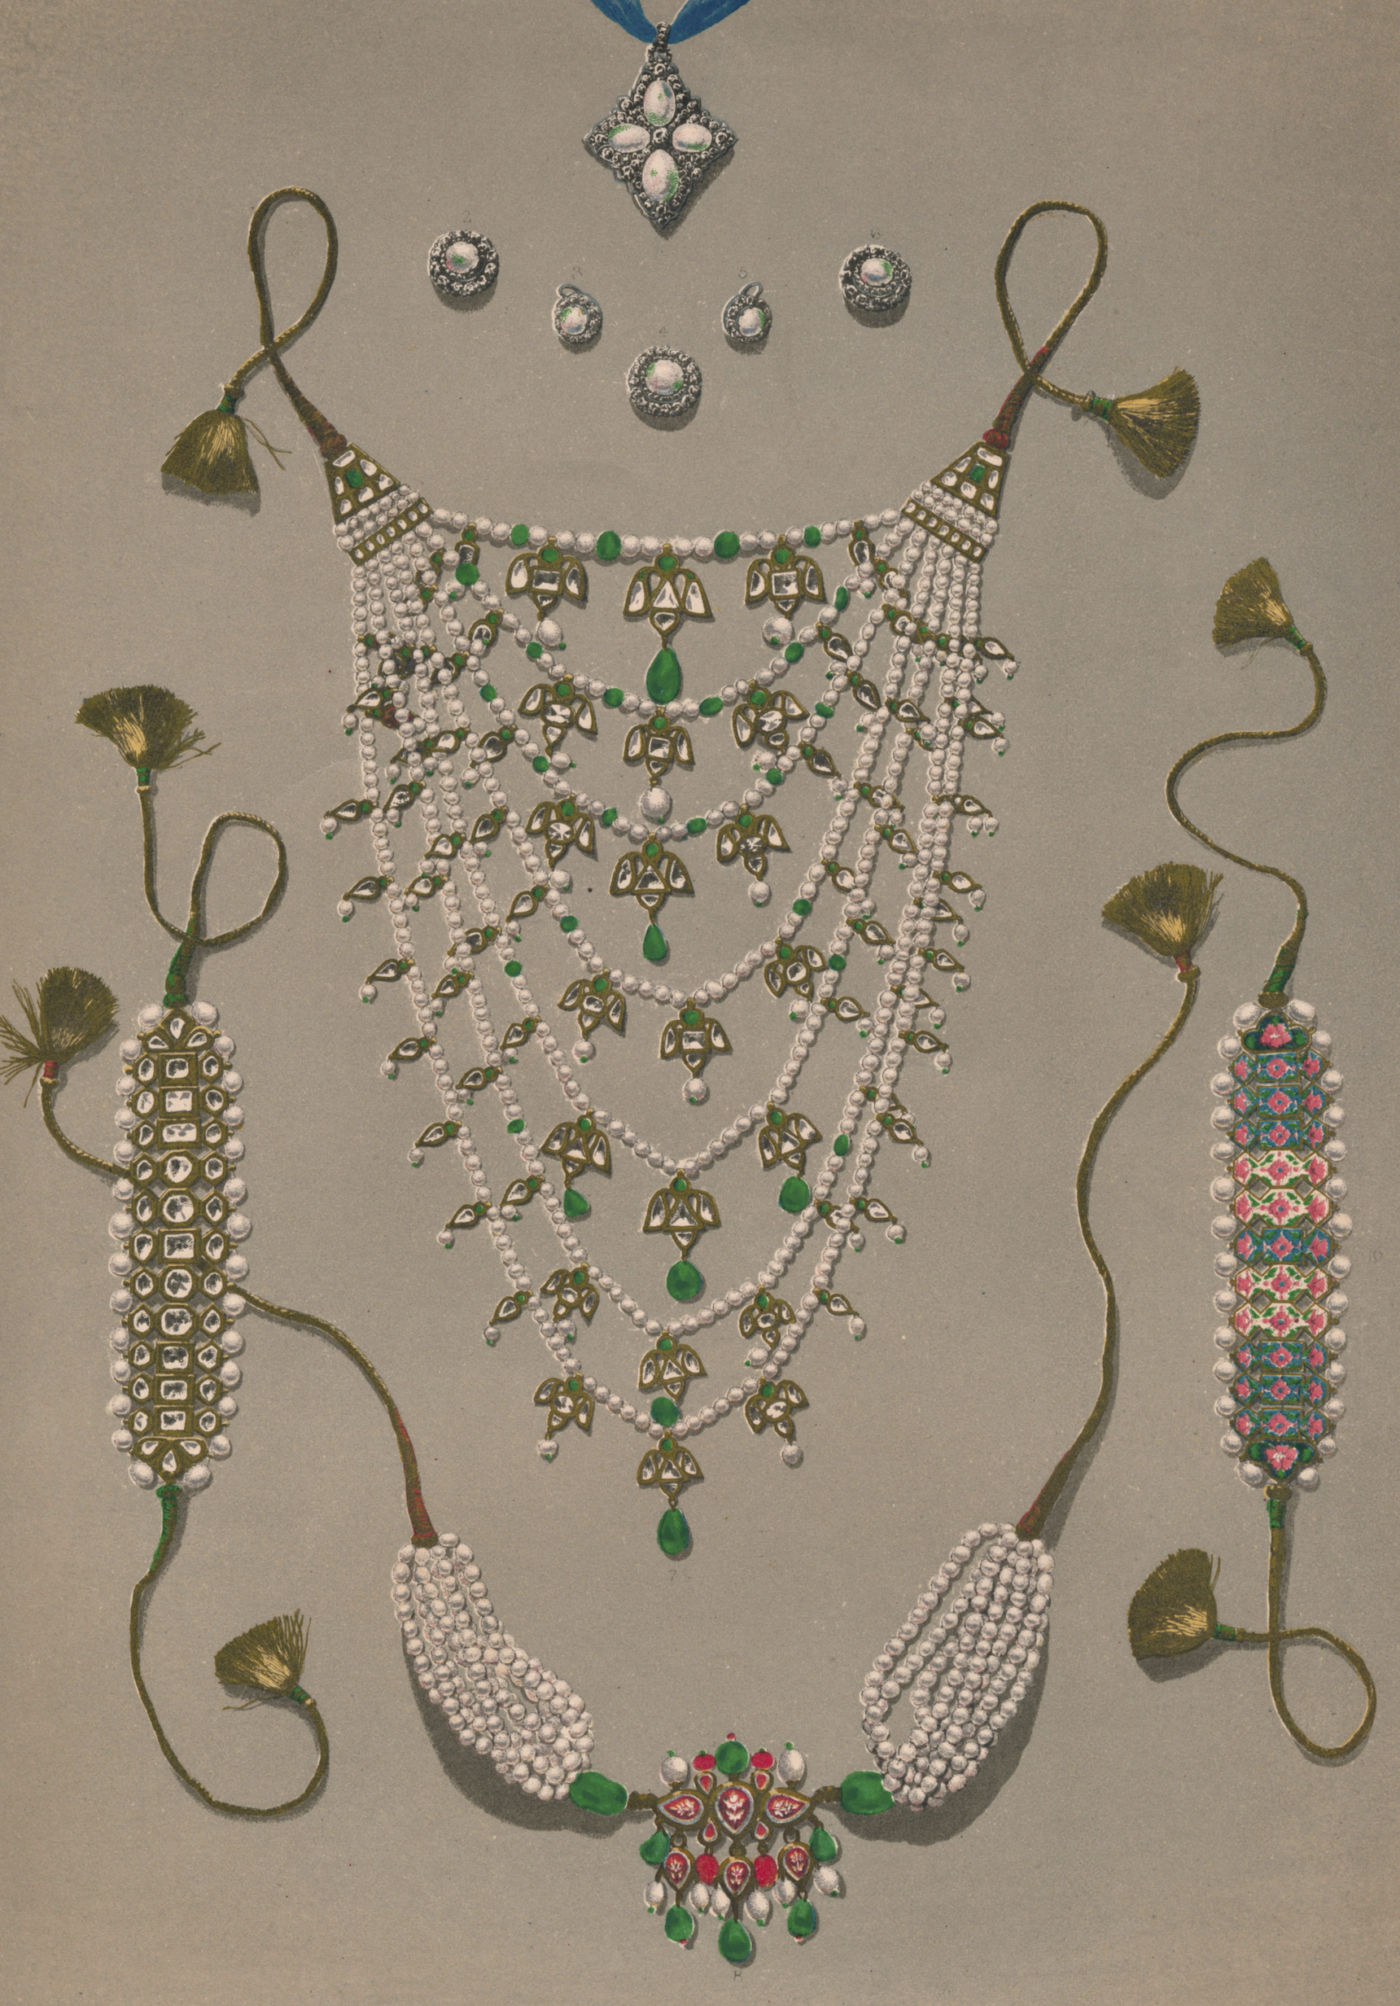 Juwelen in Indiase stijl, een huwelijksgeschenk van koningin Victoria aan koningin Alexandra Blog Zilver.nl